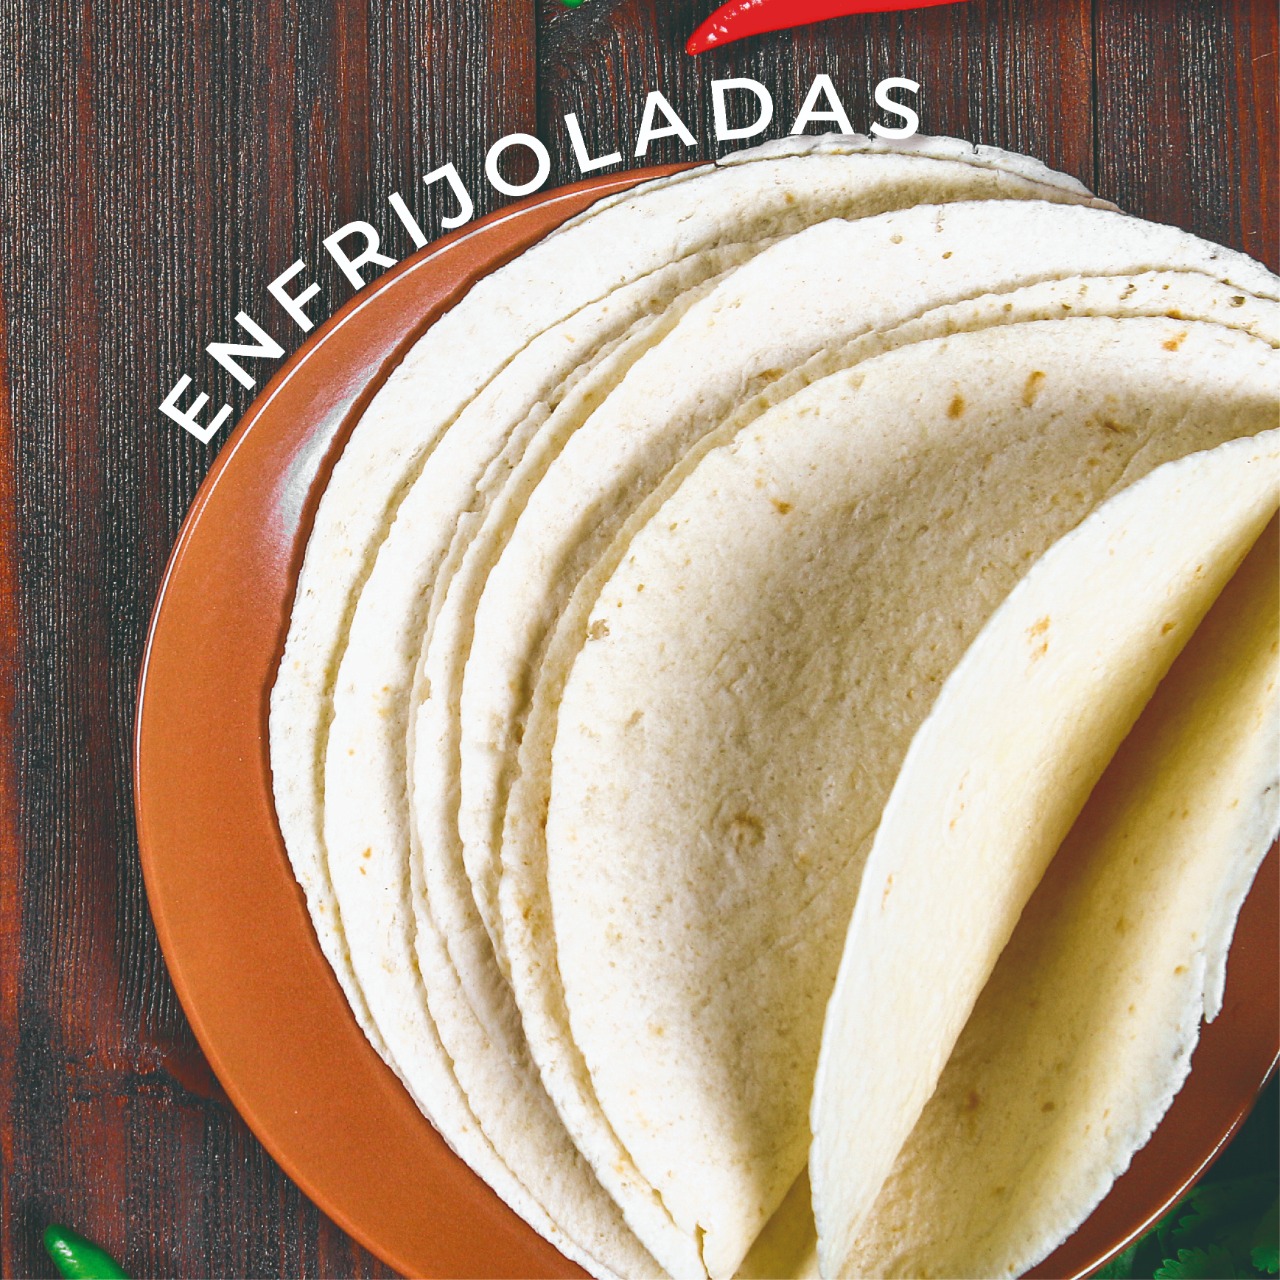 El maíz y el frijol son unos de los productos más consumidos en México, checa esta receta que contiene ambos.